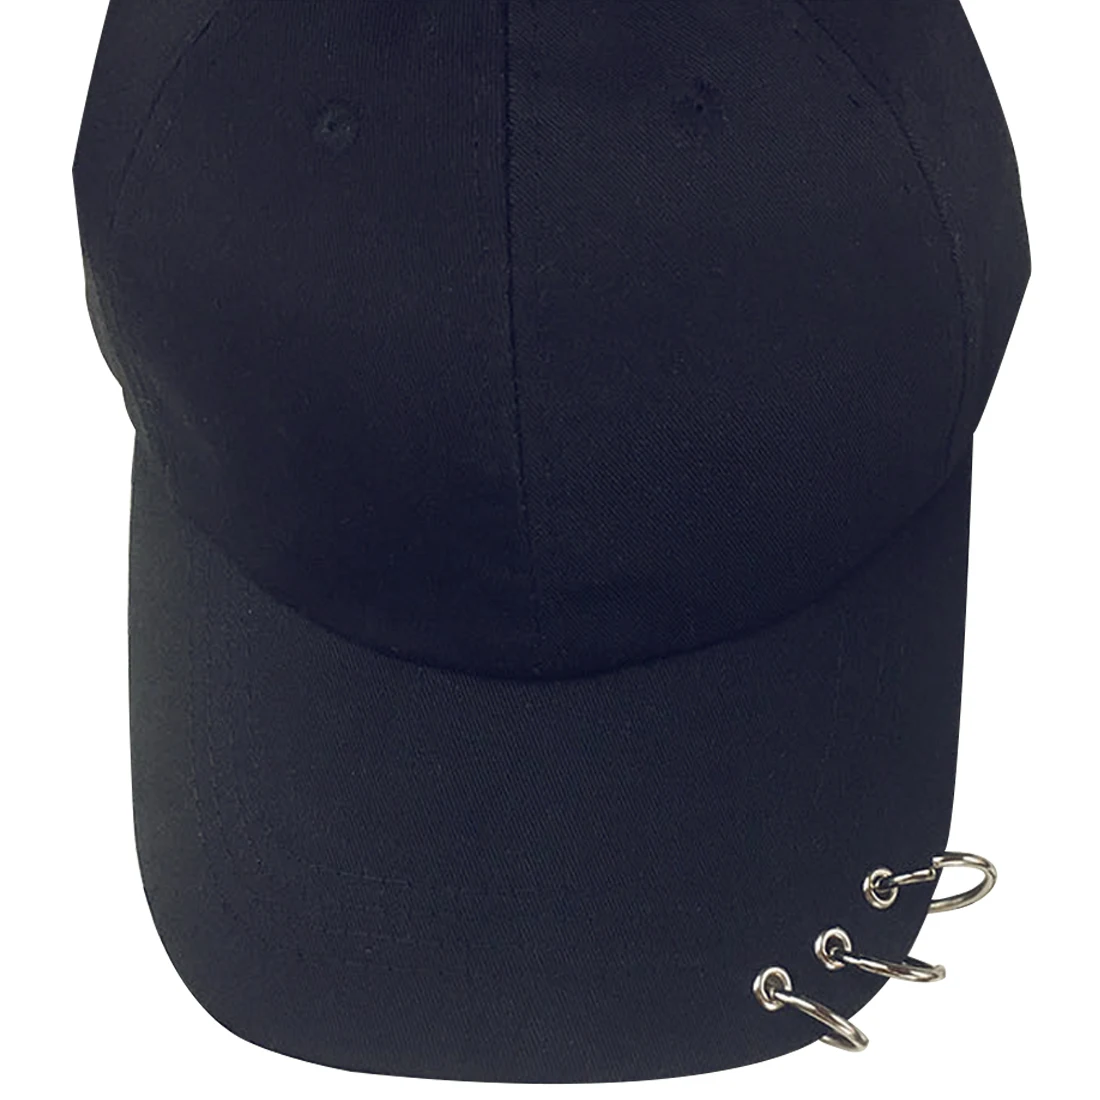 Summe охотничья шляпа хлопок утка шляпа мужчины и женщины Спорт Мода Солнце Хип Хоп шляпы Повседневный стиль Casquette